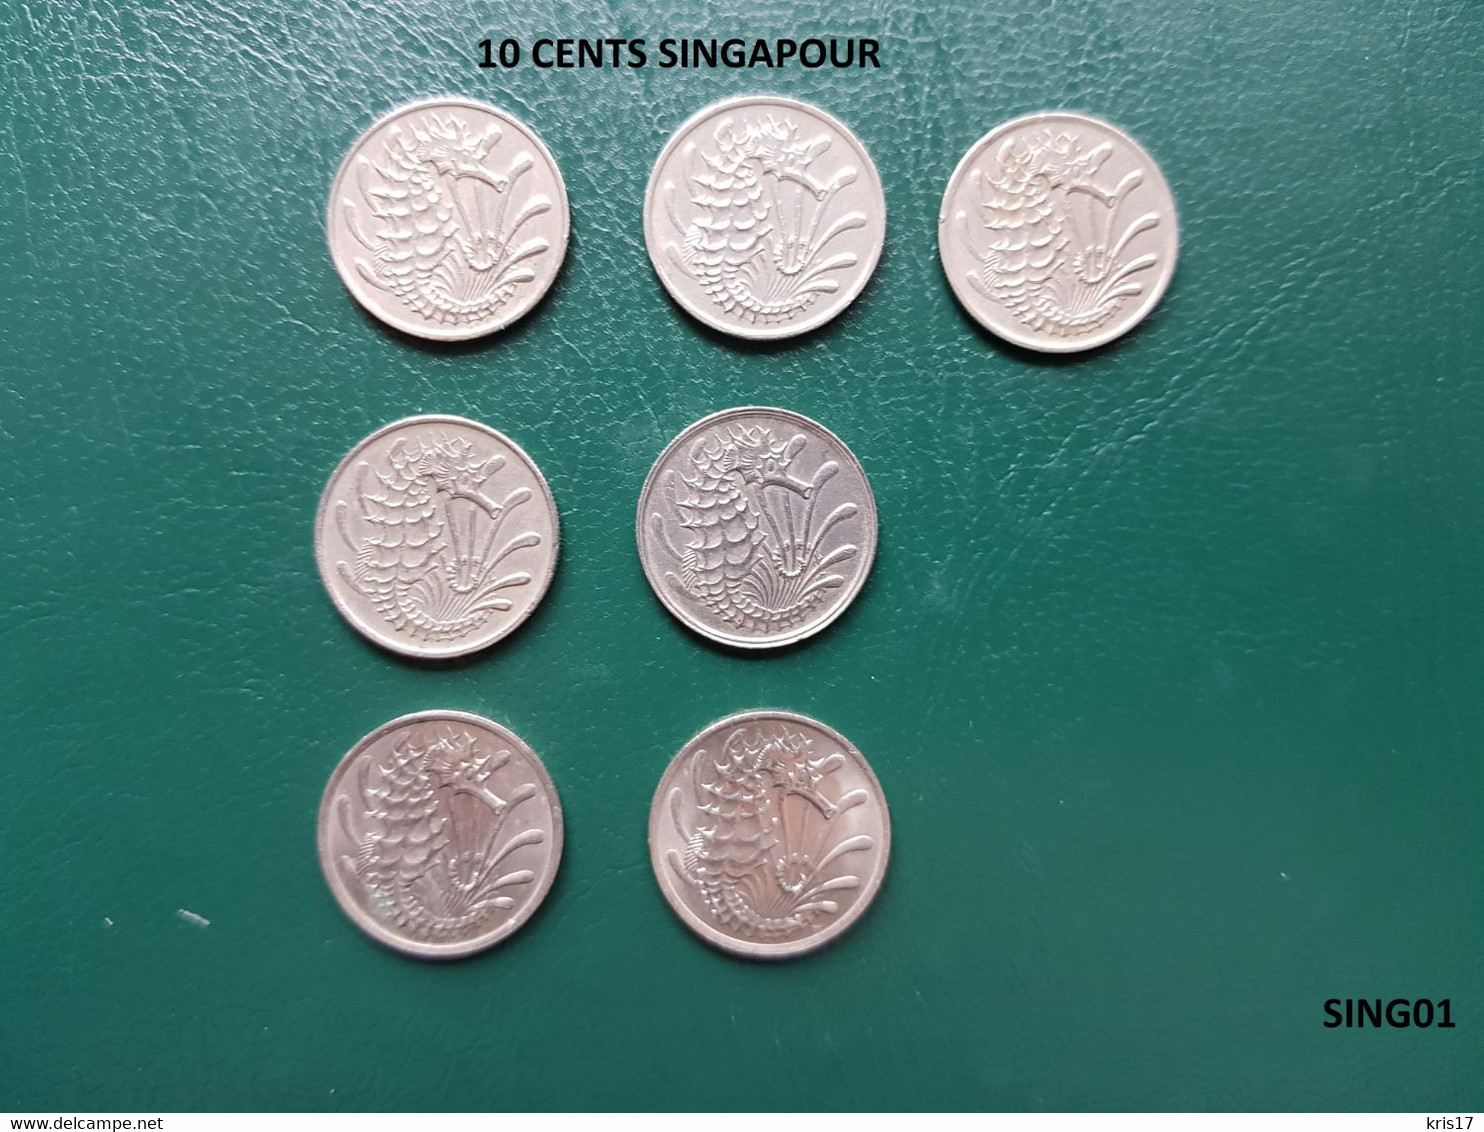 (pi) (SING01) Pièces SINGAPOUR SINGAPORE 10 CENTS 1967-68-69 1971-78 1980-81 - Singapour